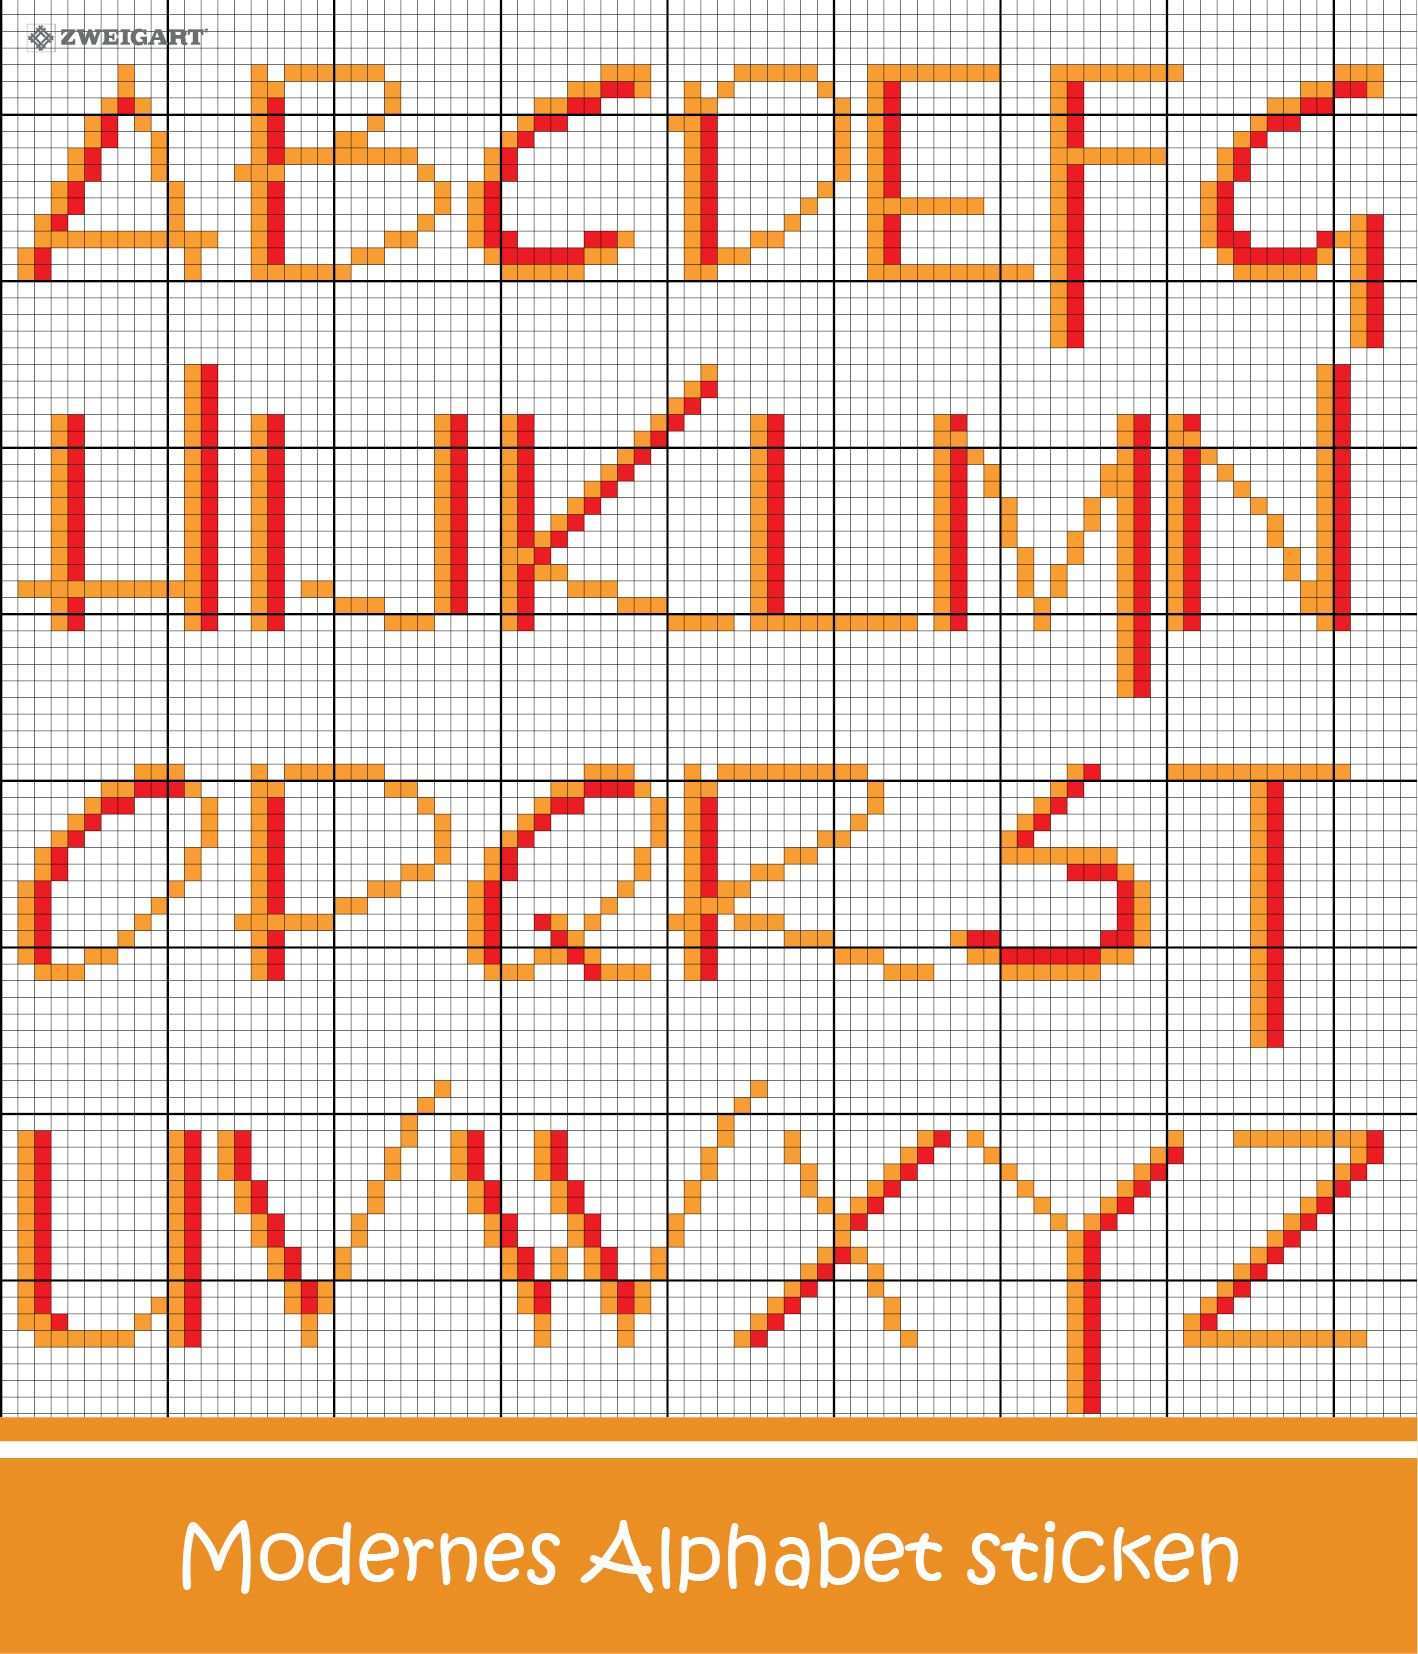 Modernes Alphabet Sticken Entdecke Zahlreiche Kostenlose Charts Zum Sticken Alphabet Sticken Buchstaben Sticken Sticken